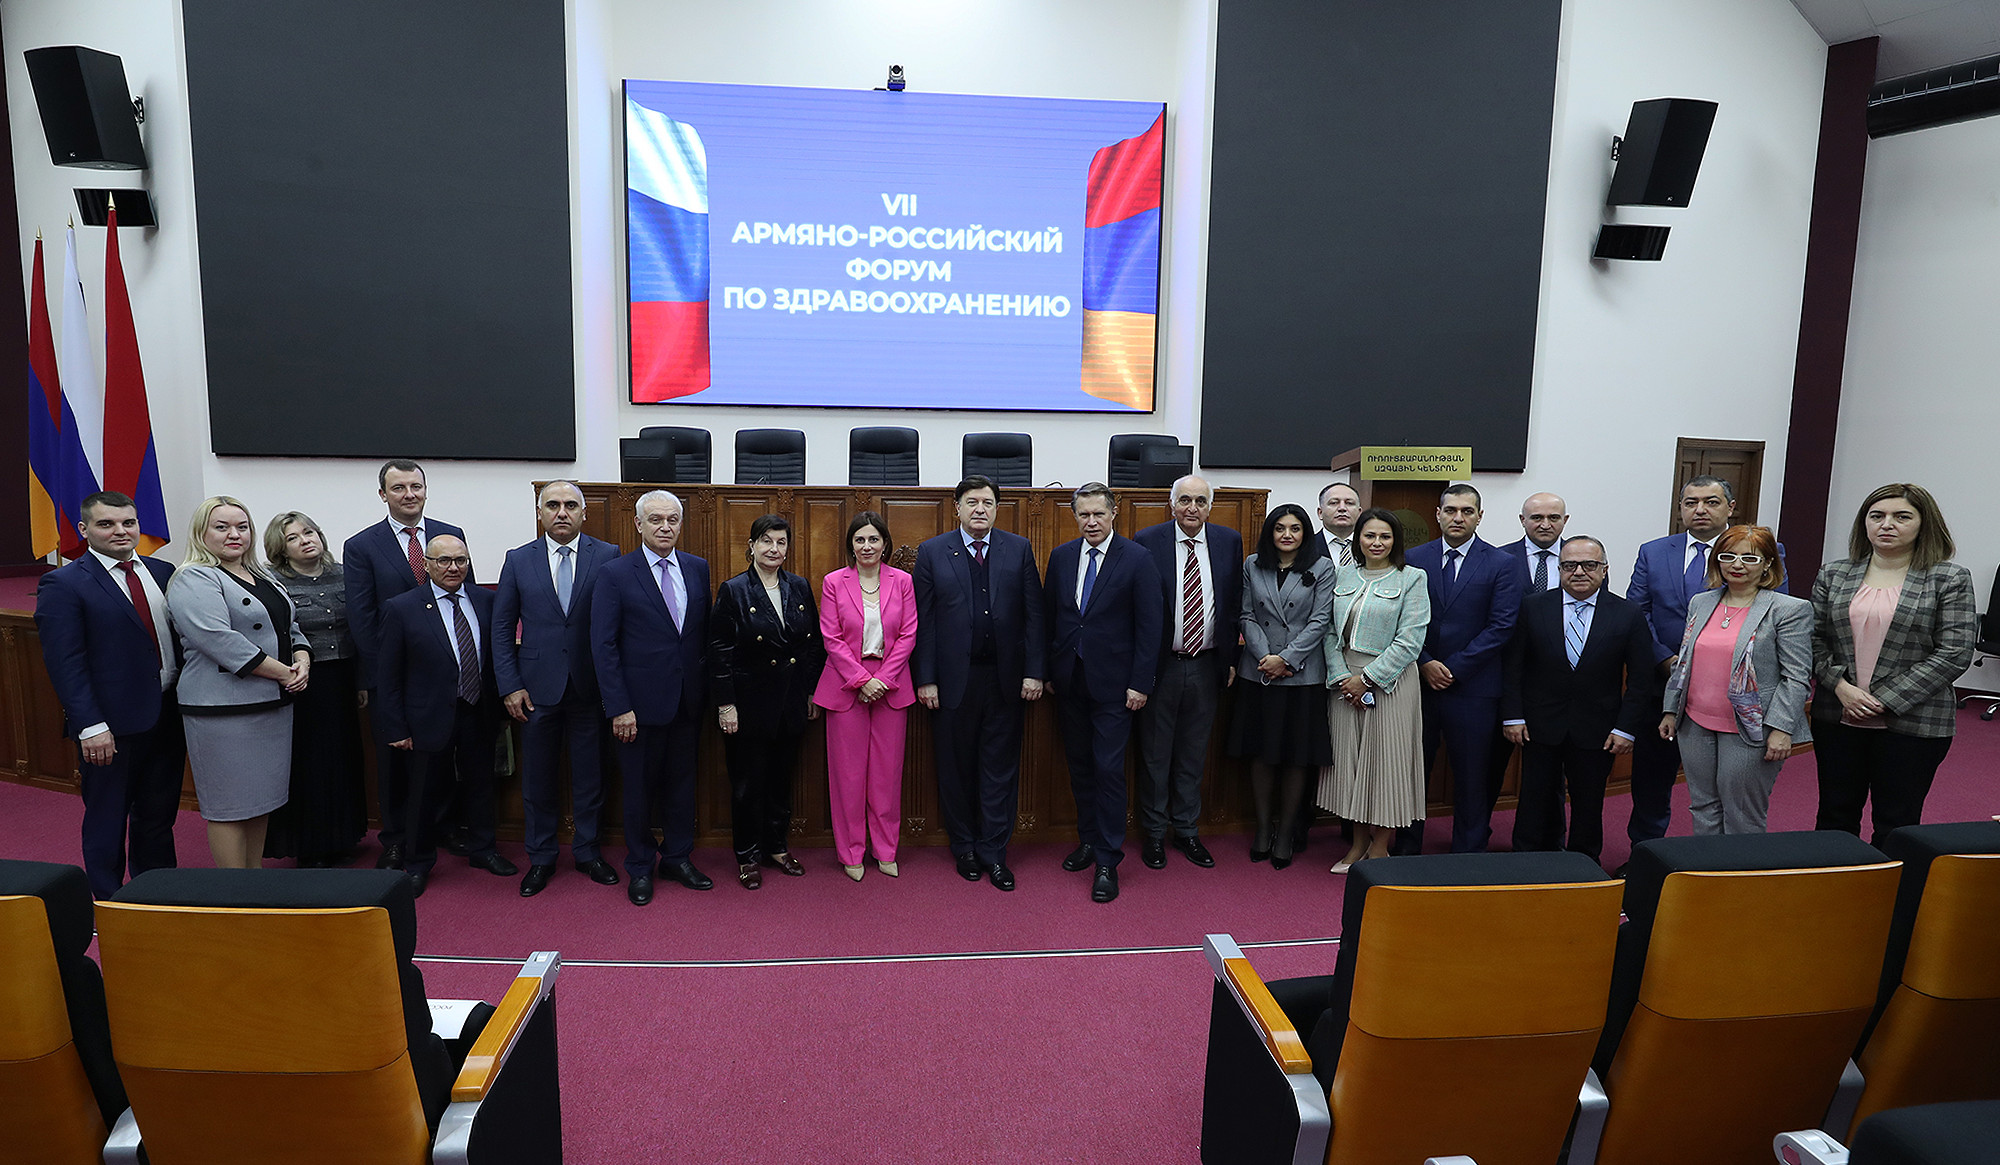 ՌԴ առողջապահության նախարարի գլխավորած պատվիրակությունը մասնակցել է հայ-ռուսական առողջապահական 7-րդ համաժողովին